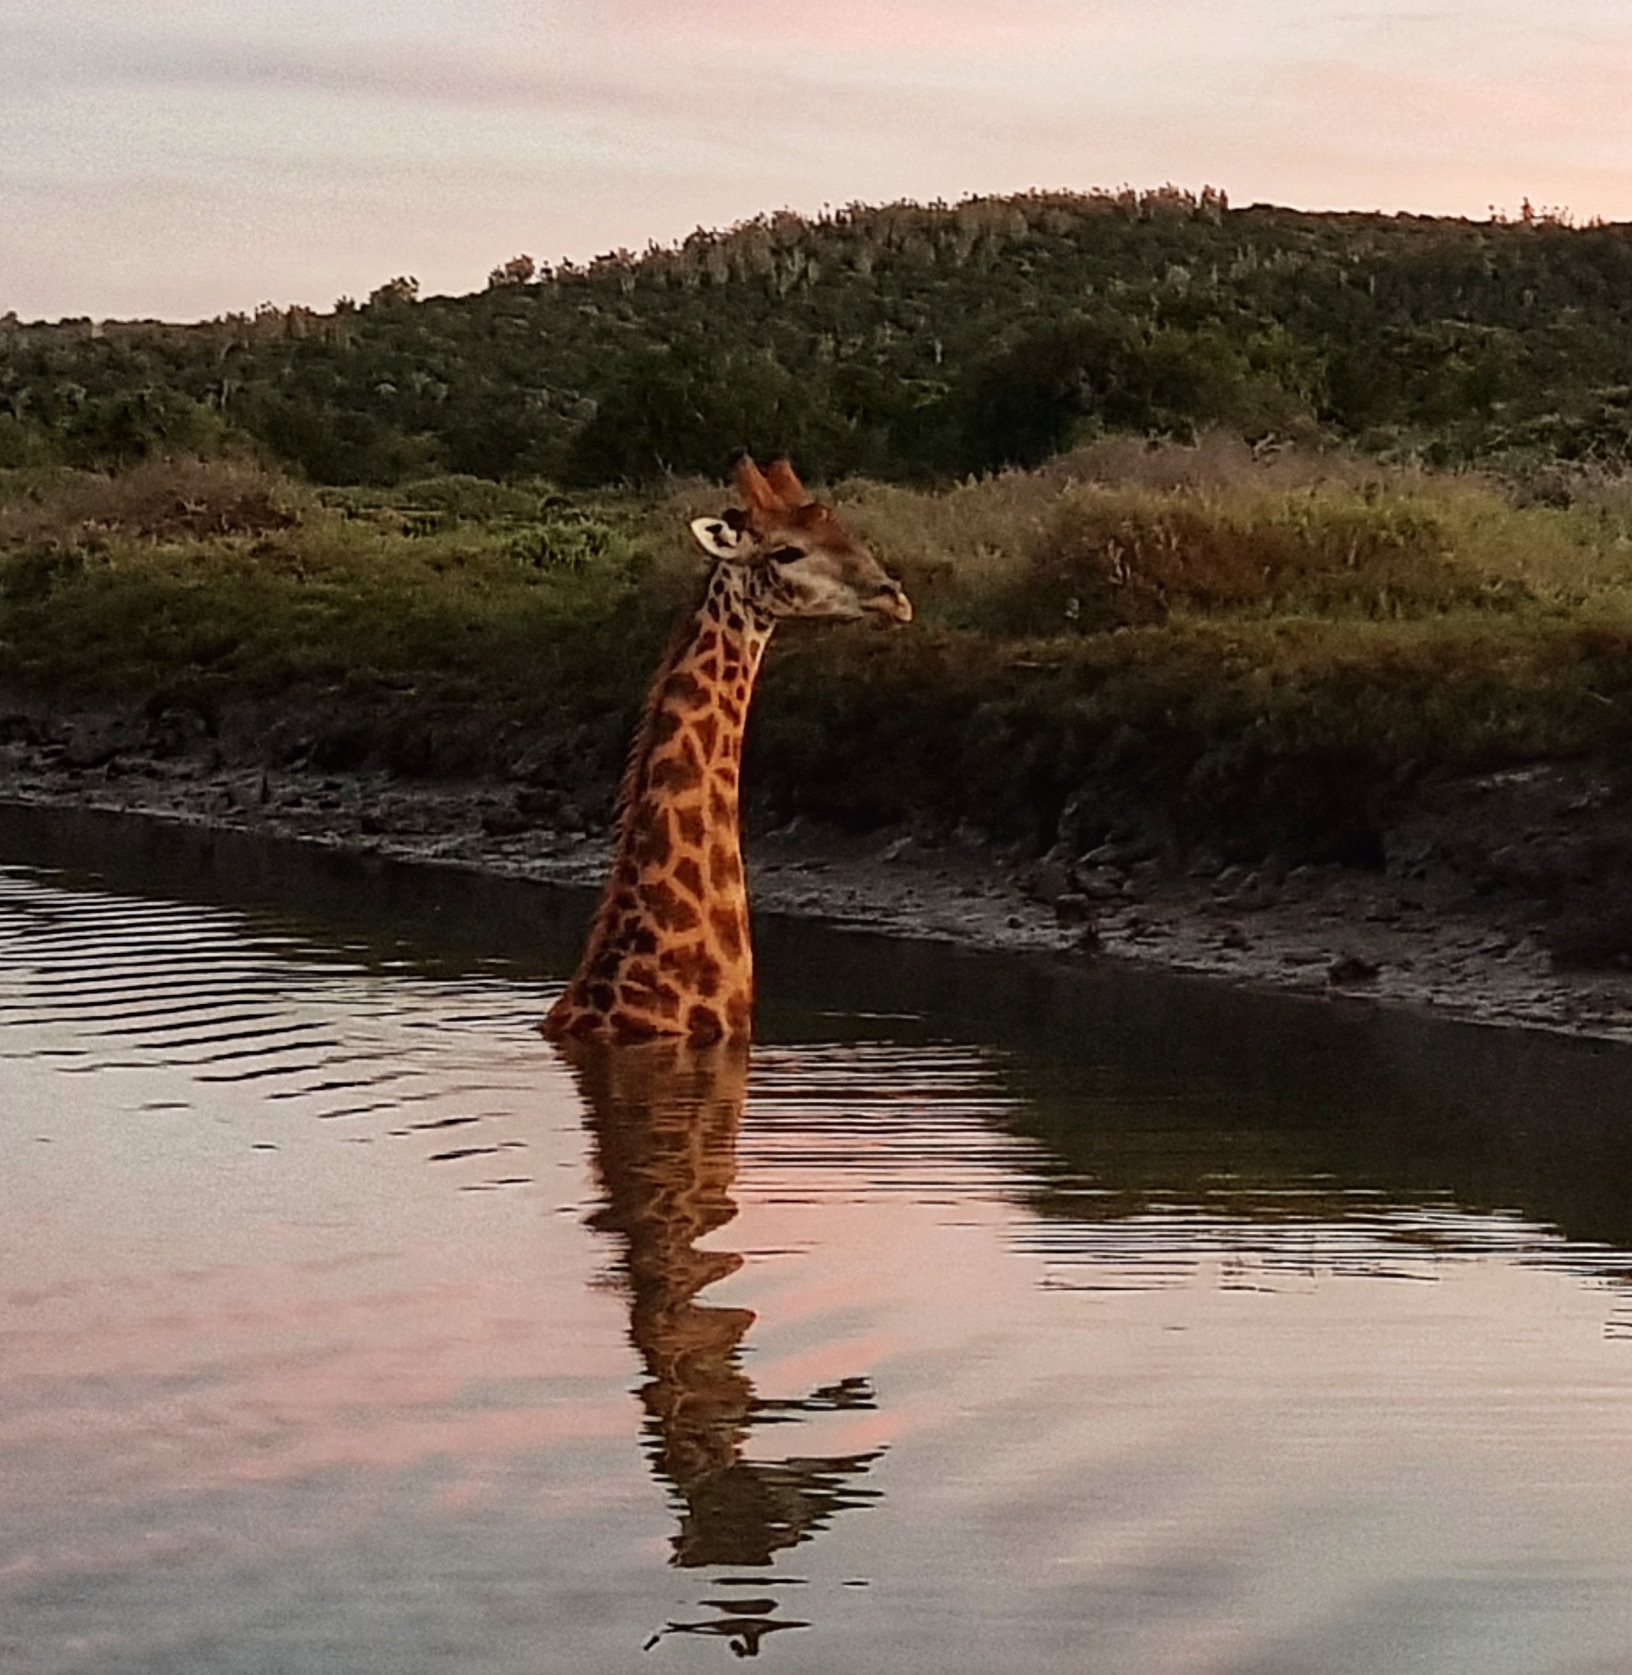 Kariega Can Giraffe Swim in River